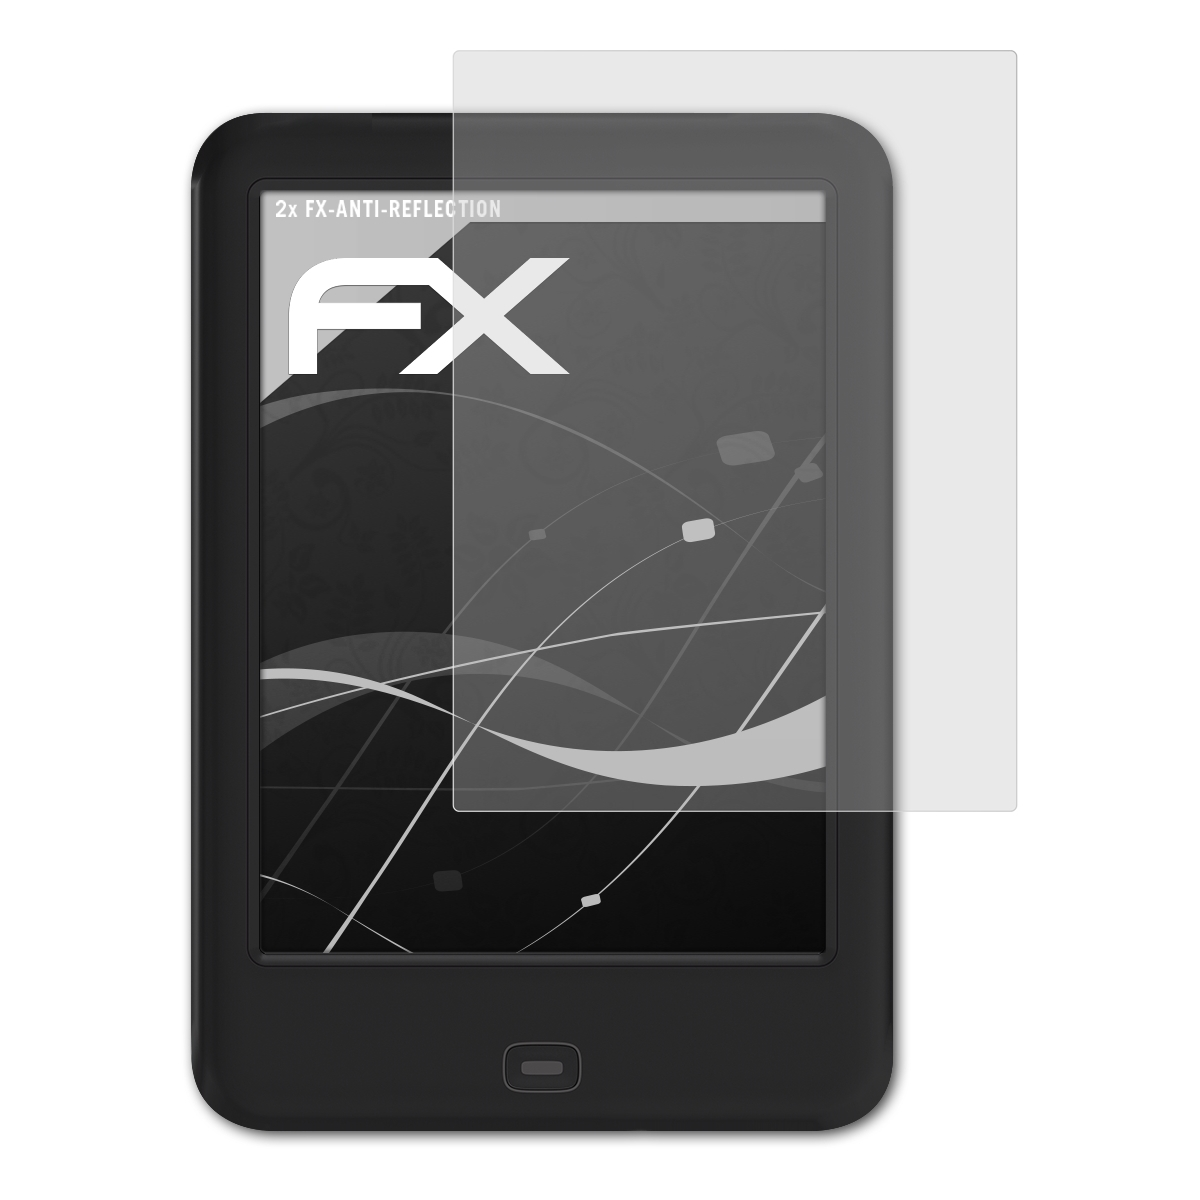 ATFOLIX FX-Antireflex Shine Displayschutz(für 2 2x HD) Tolino